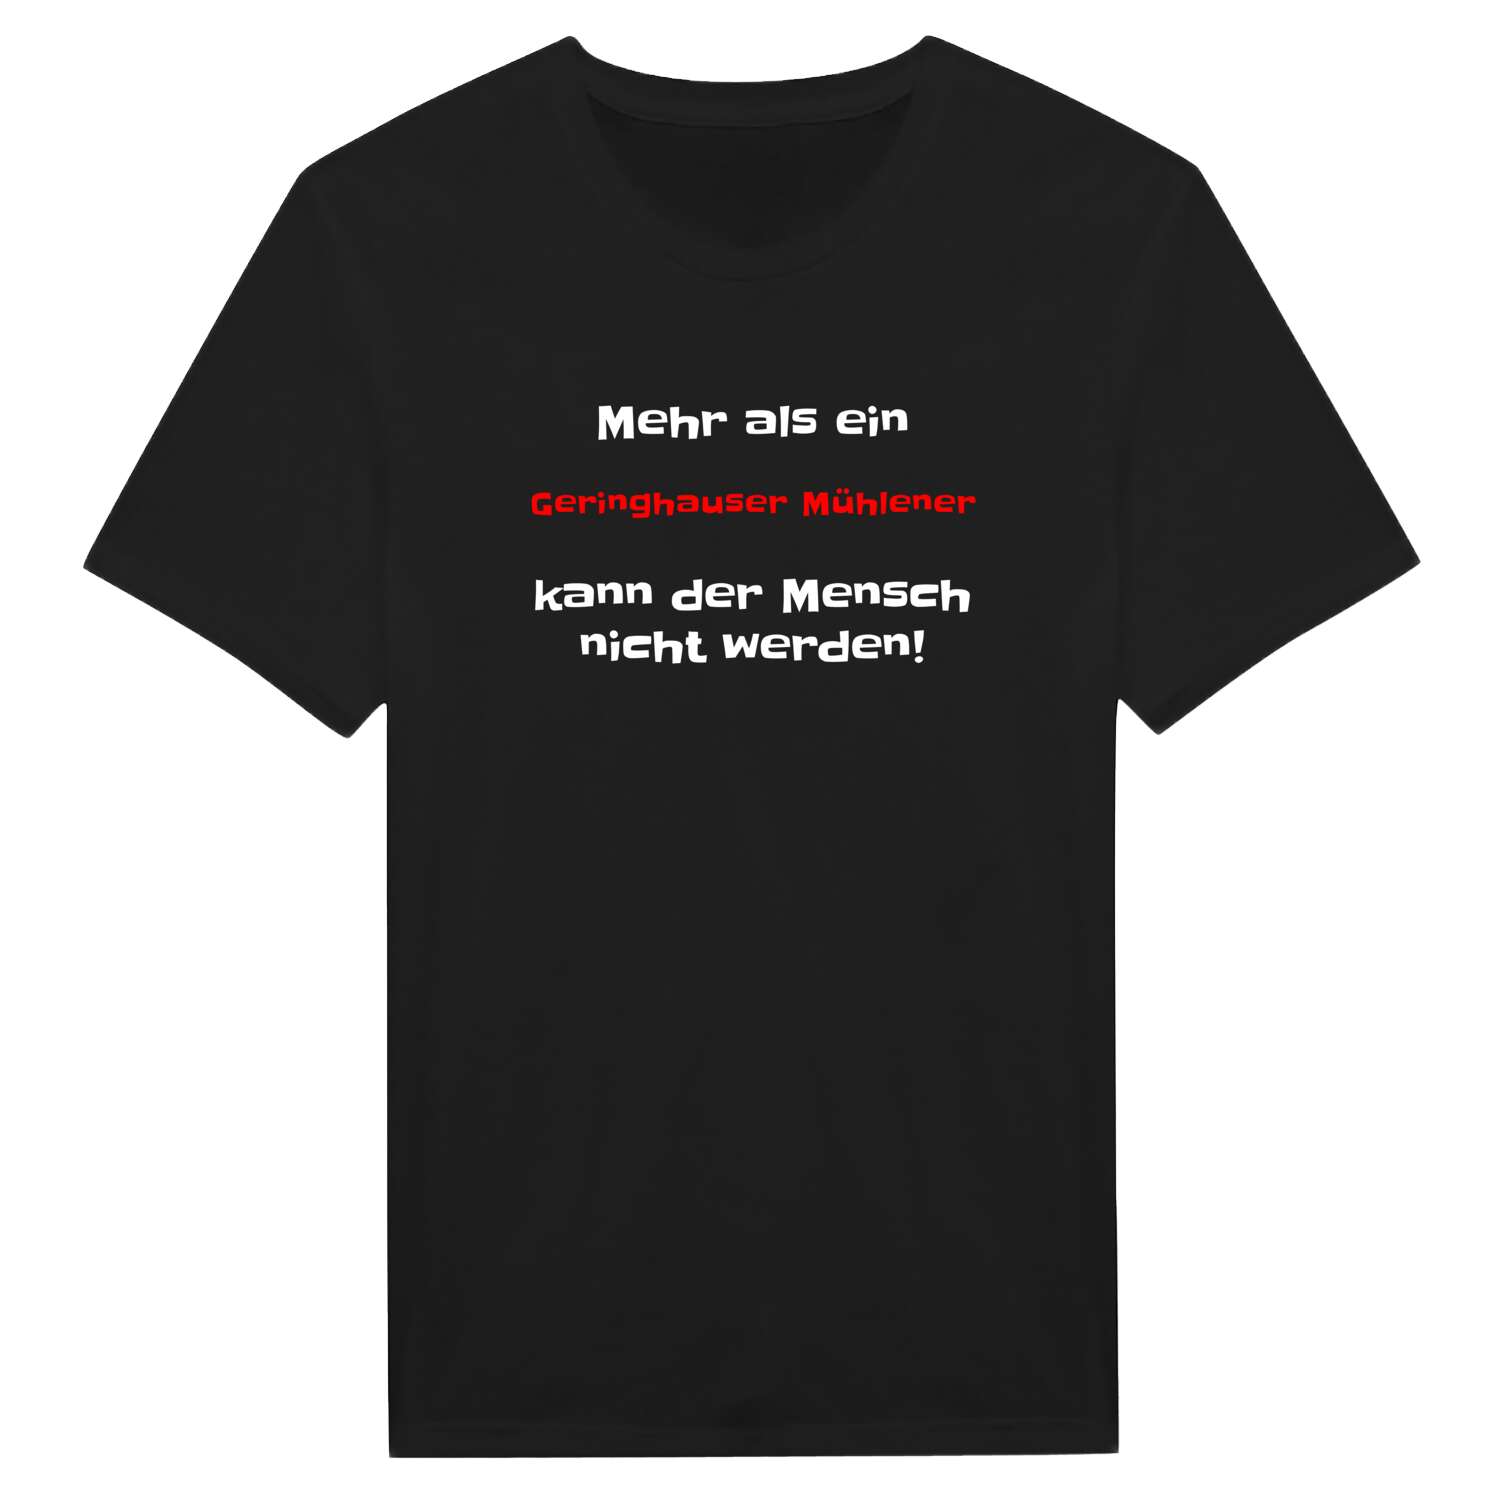 Geringhauser Mühle T-Shirt »Mehr als ein«